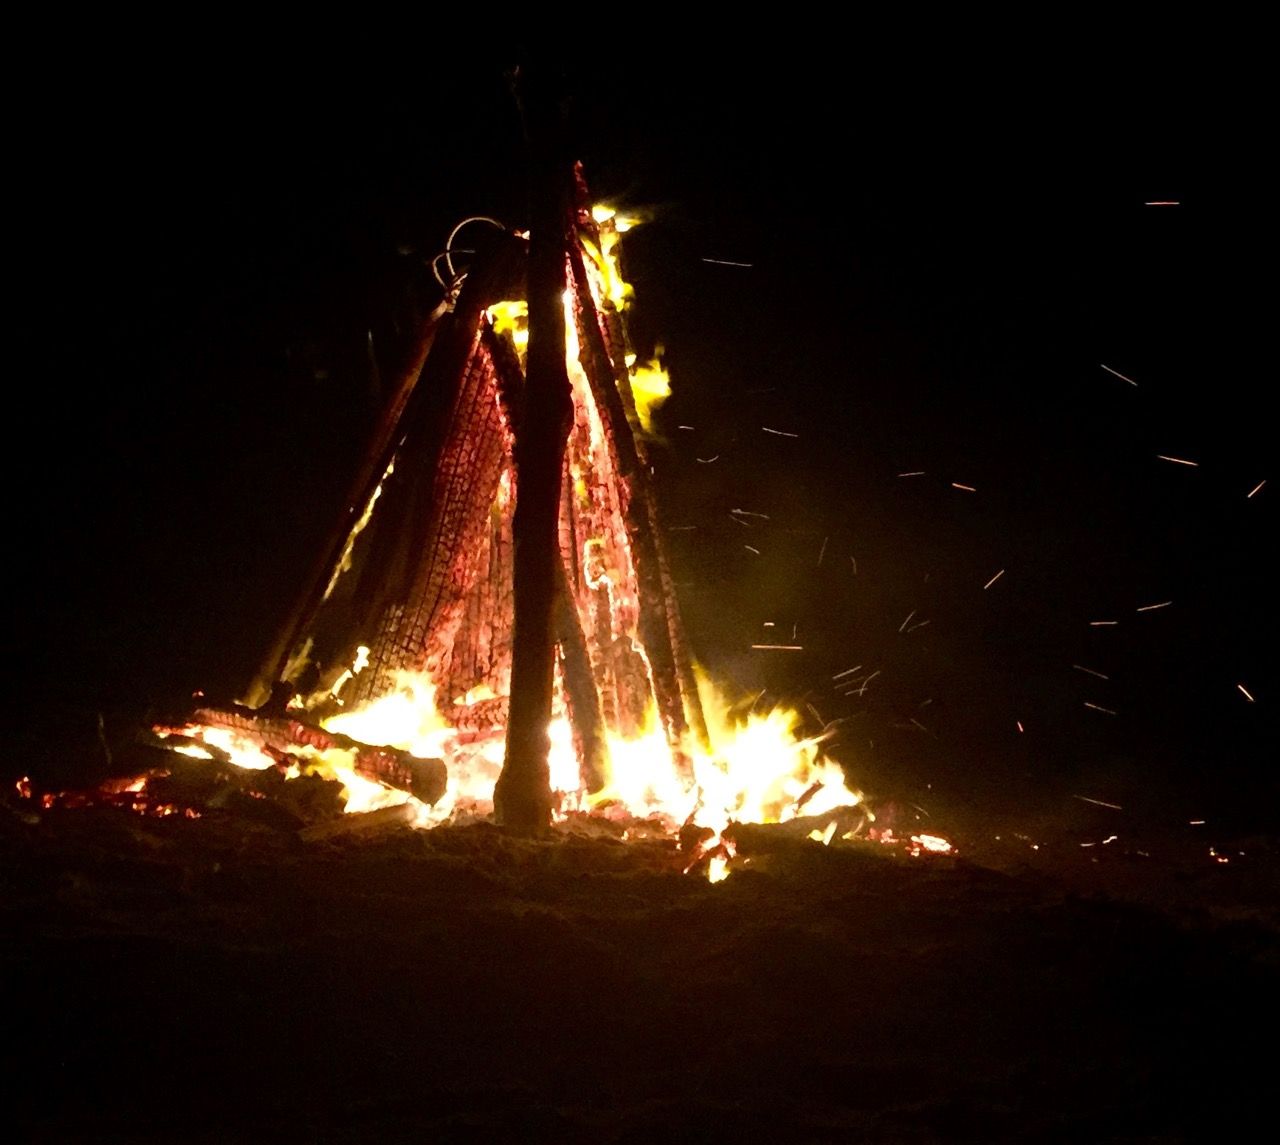 A bonfire at night.